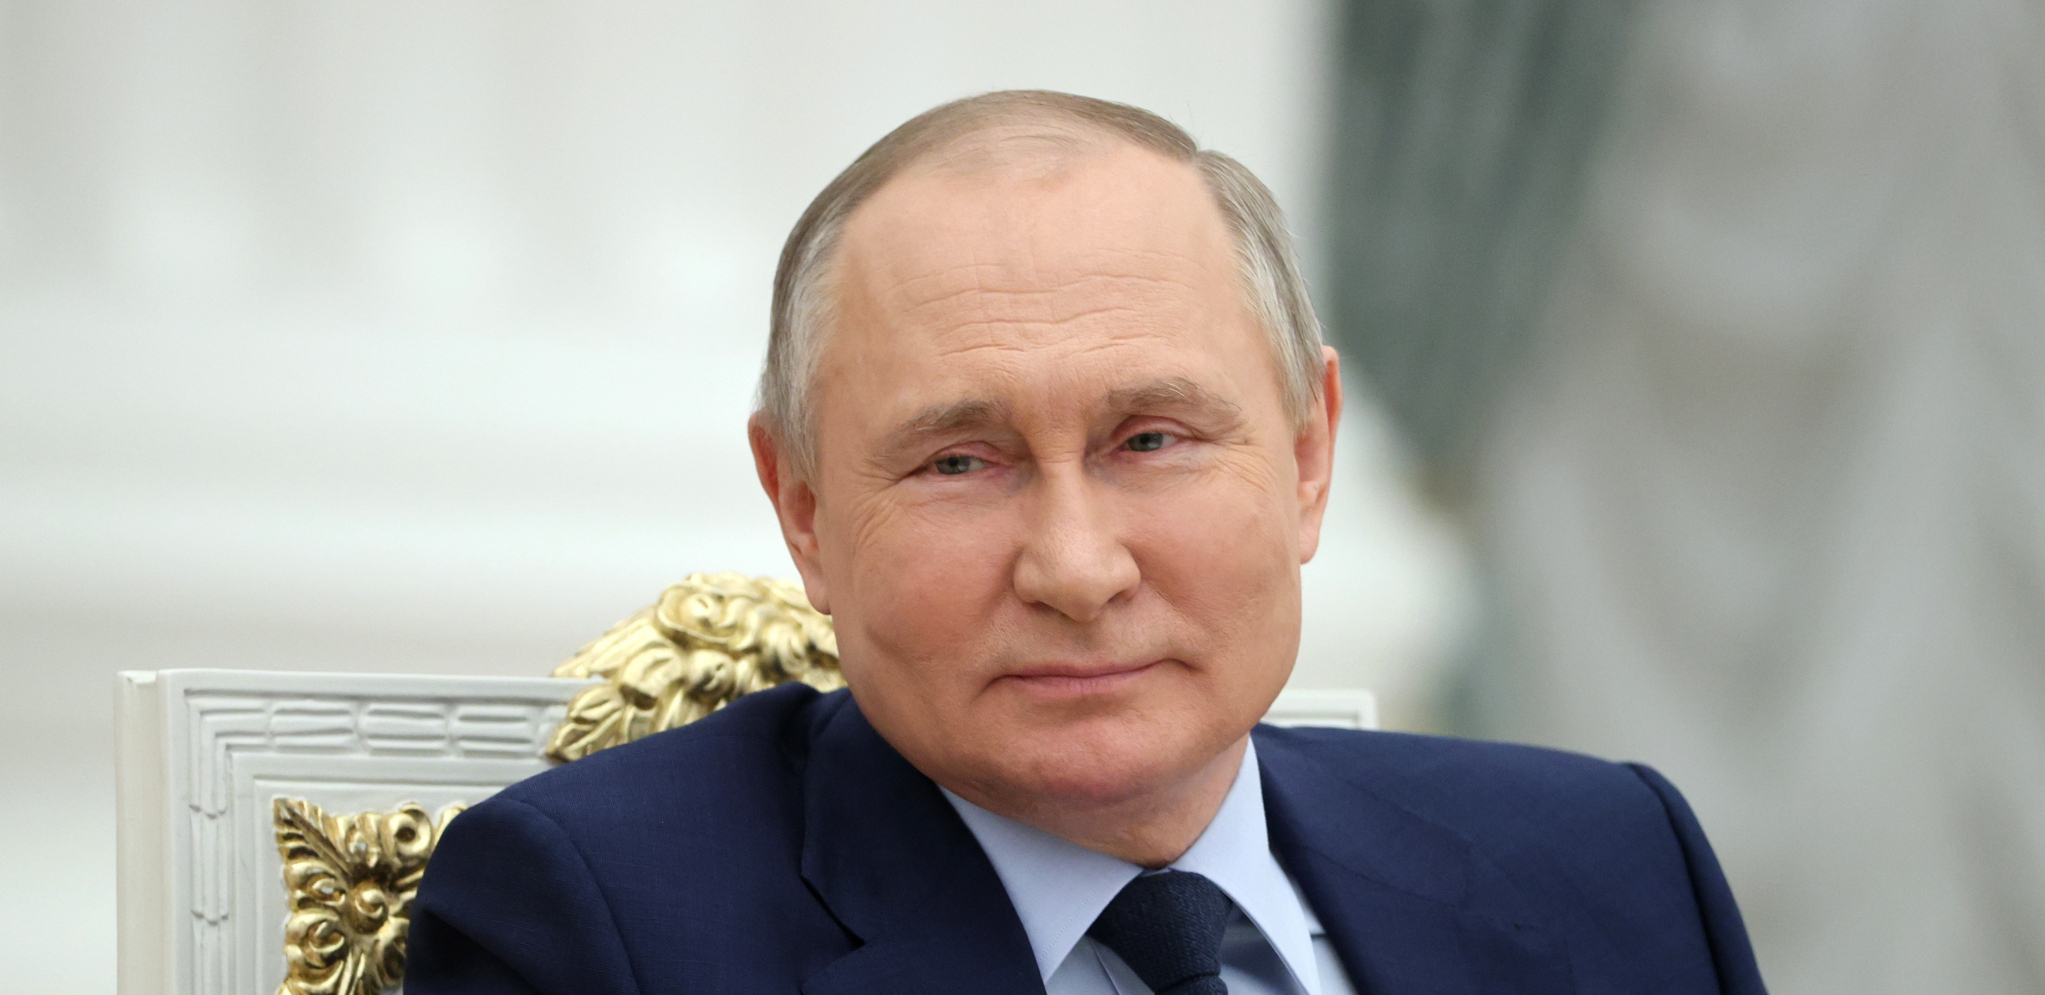 RAZREŠENA ENINGMA KOJA GODINAMA INTRIGIRA SVET Otkriven eliksir Putinove nesvakidašnje mladolikosti